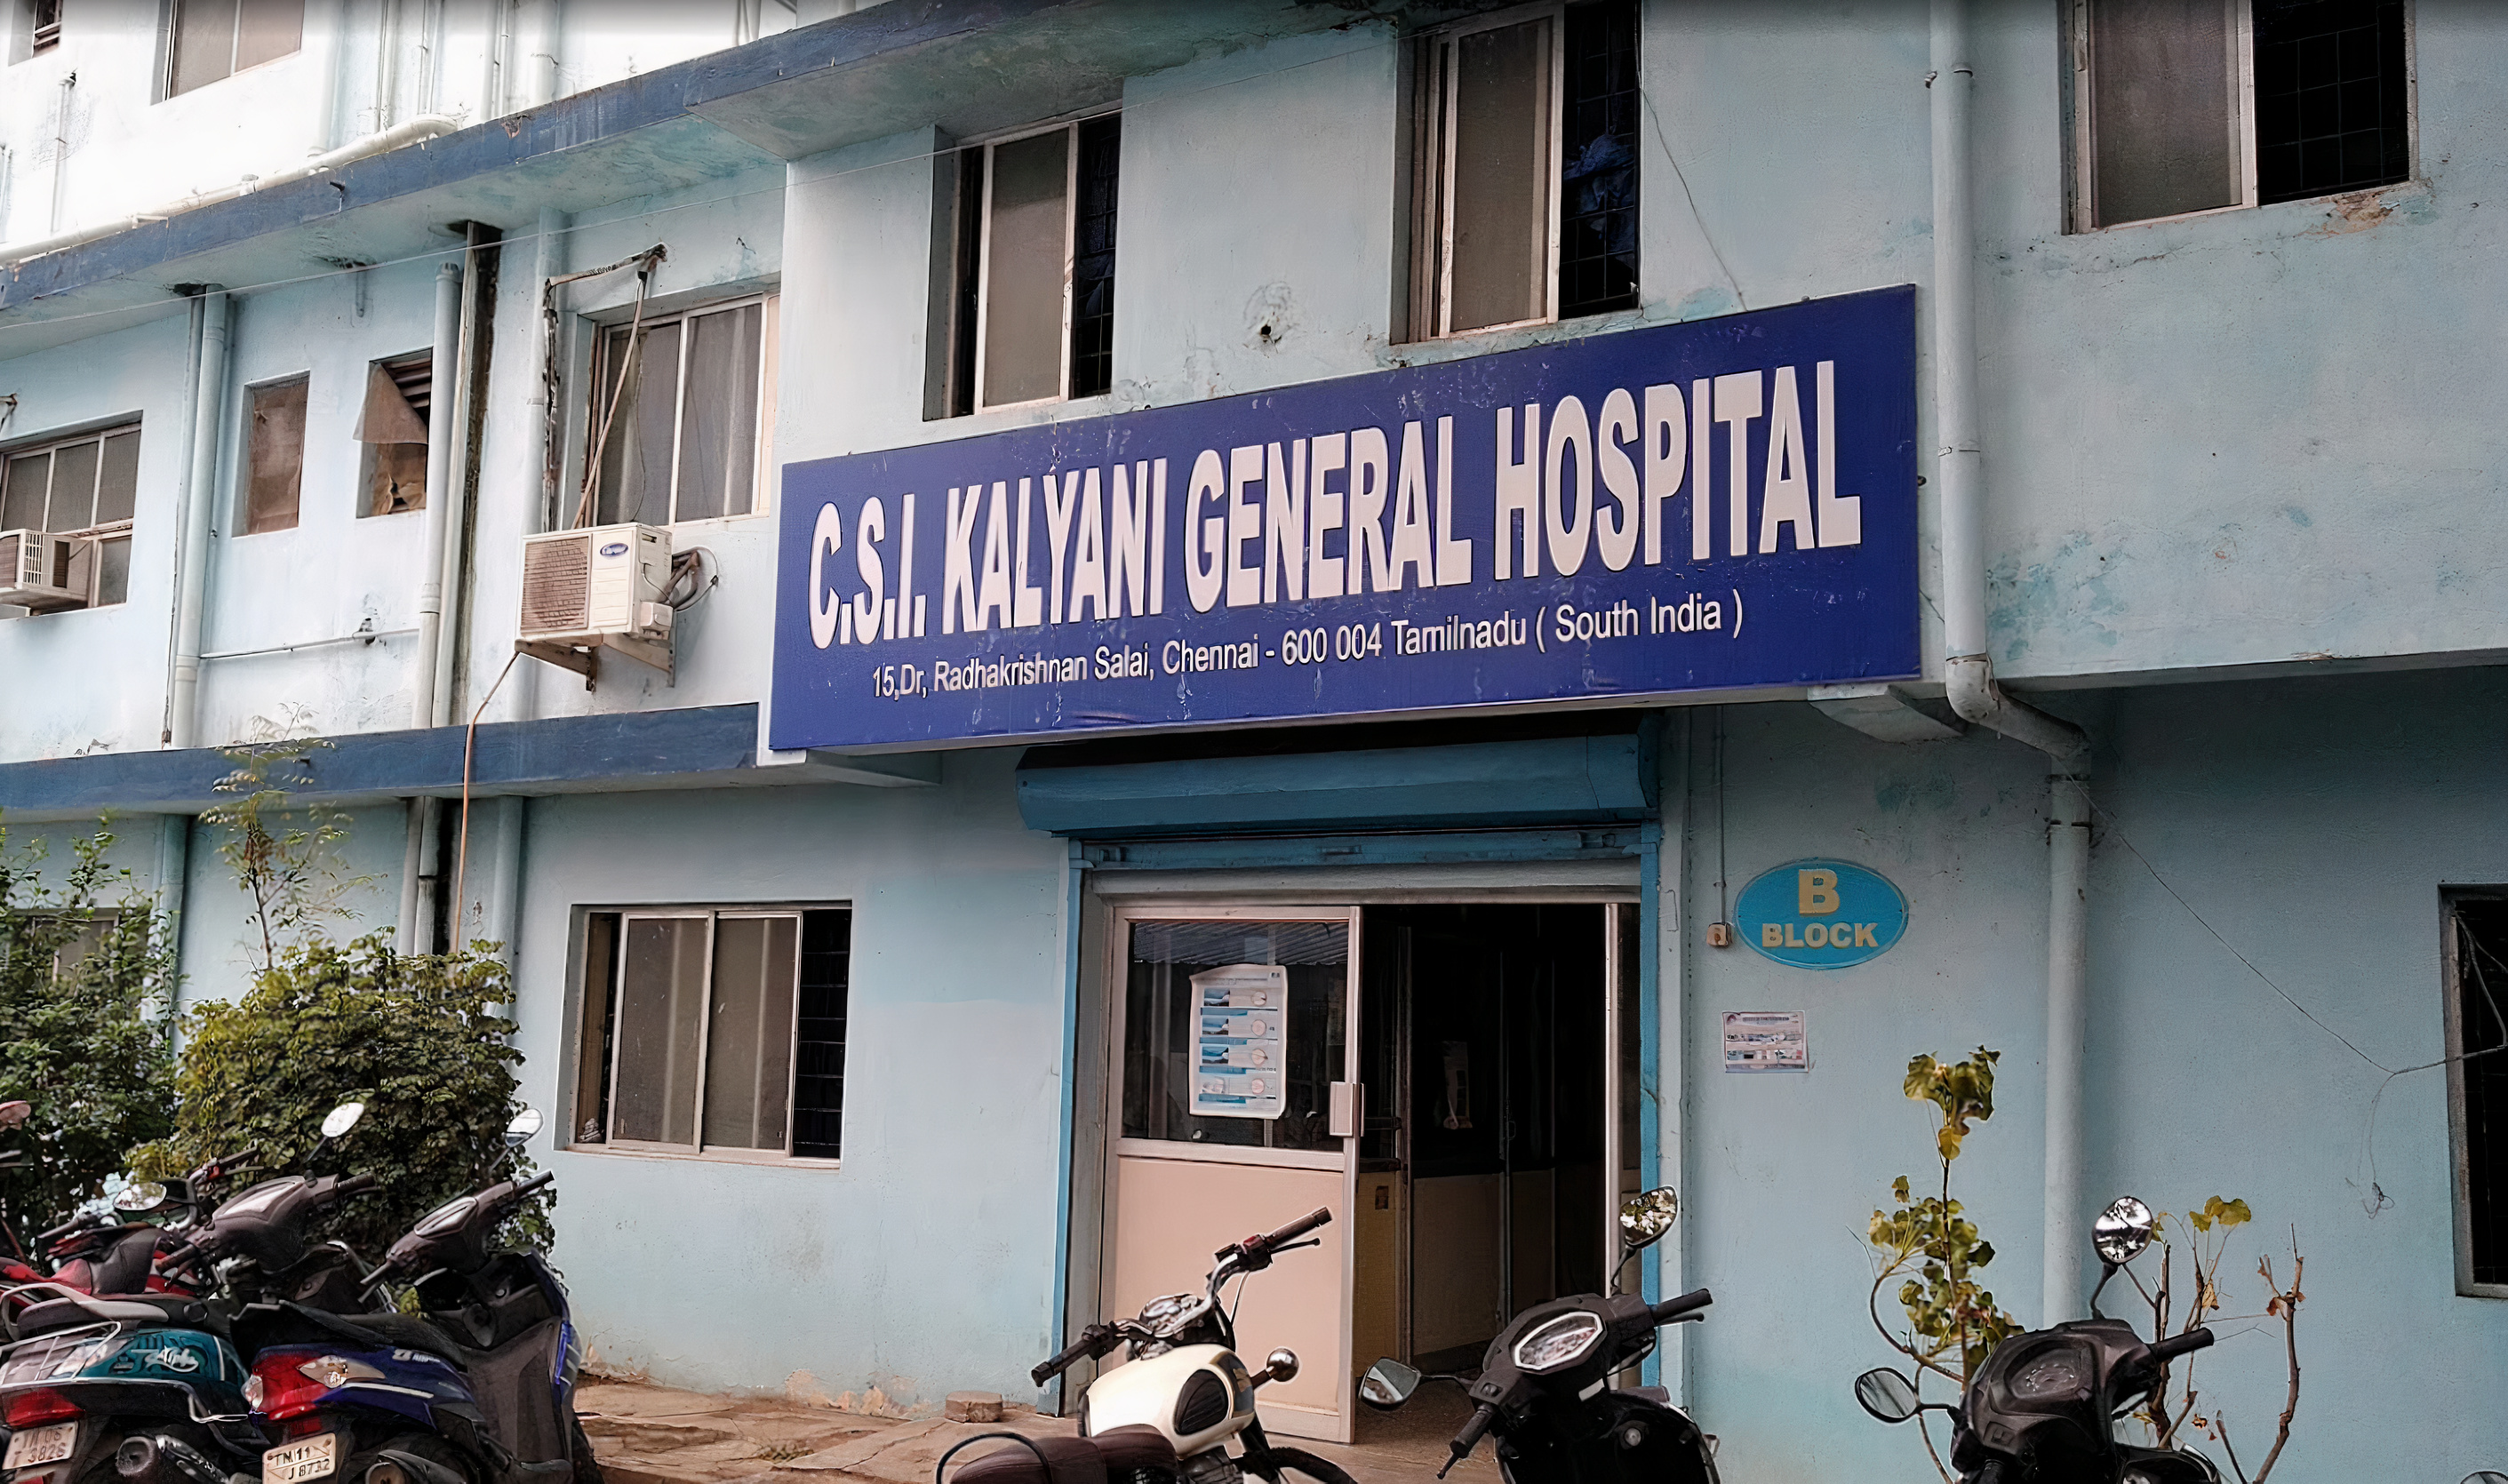 C. S. I. Kalyani Multispeciality Hospital